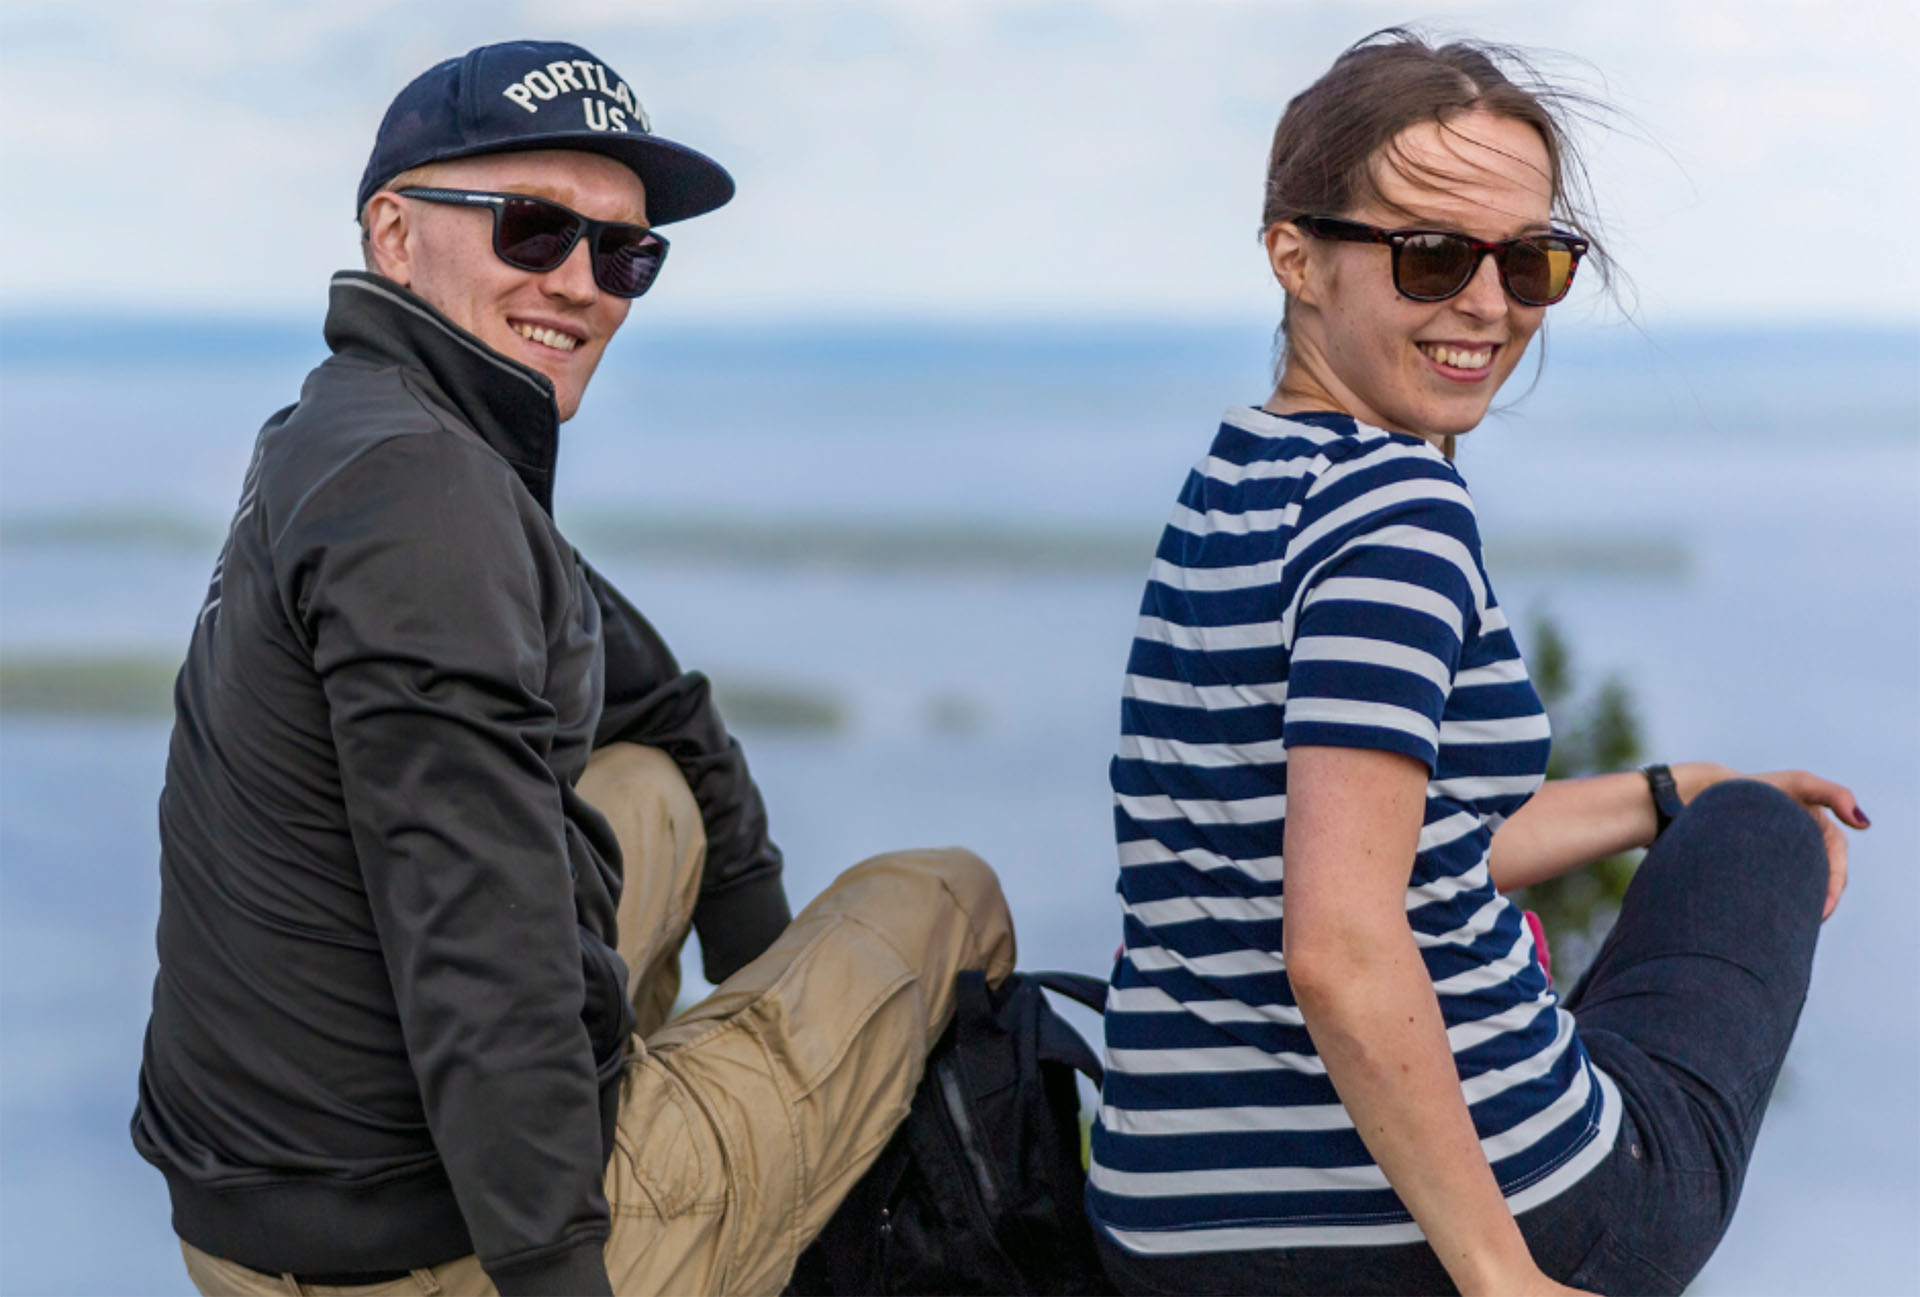 Mies ja nainen istuvat kalliolla saaristossa. He ovat kääntyneet kohti kameraa ja hymyilevät aurinkolasit päässään.